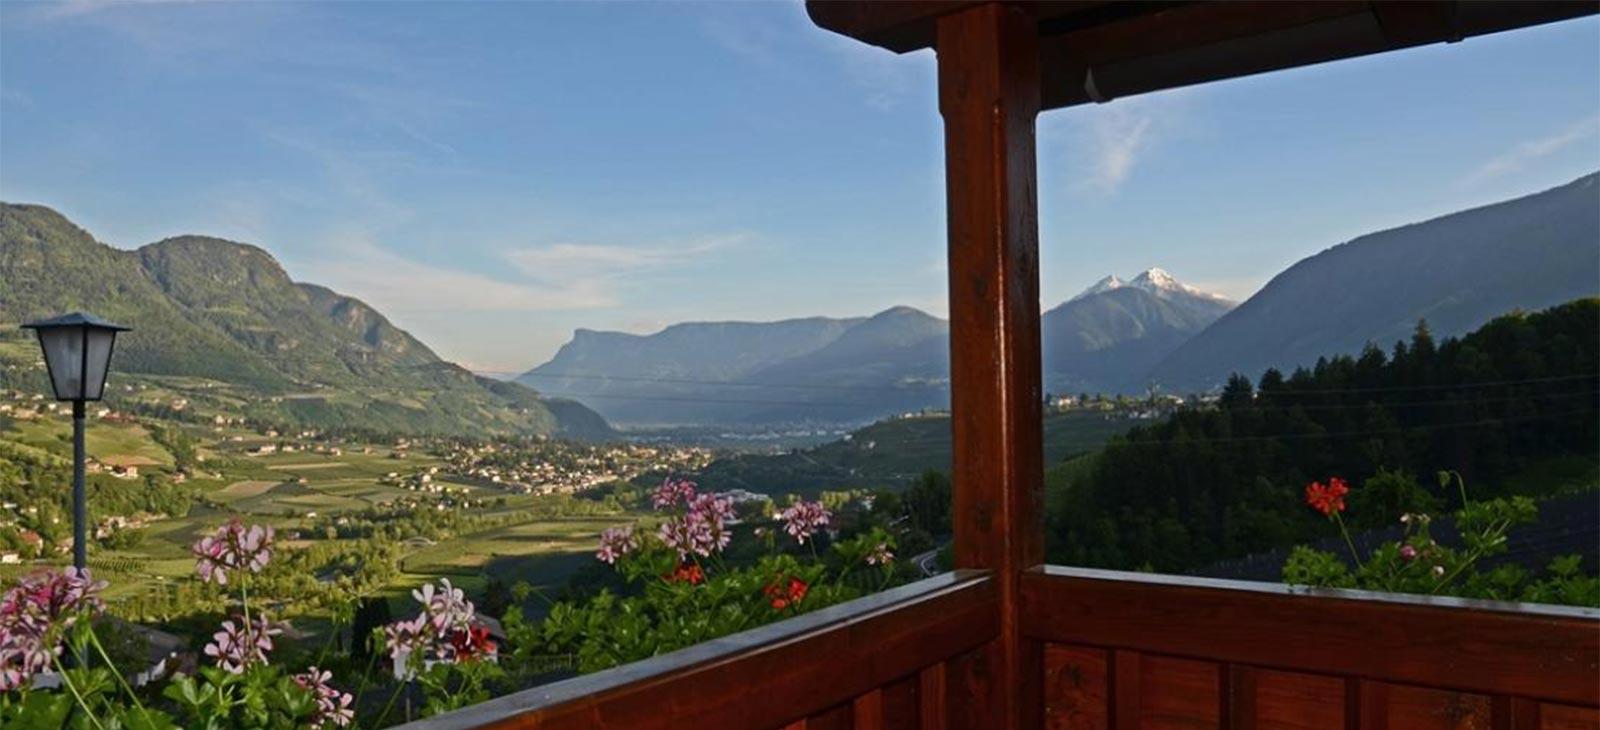 Casa per le vacanze Mayerhof a Caines presso Merano Sudtirolo